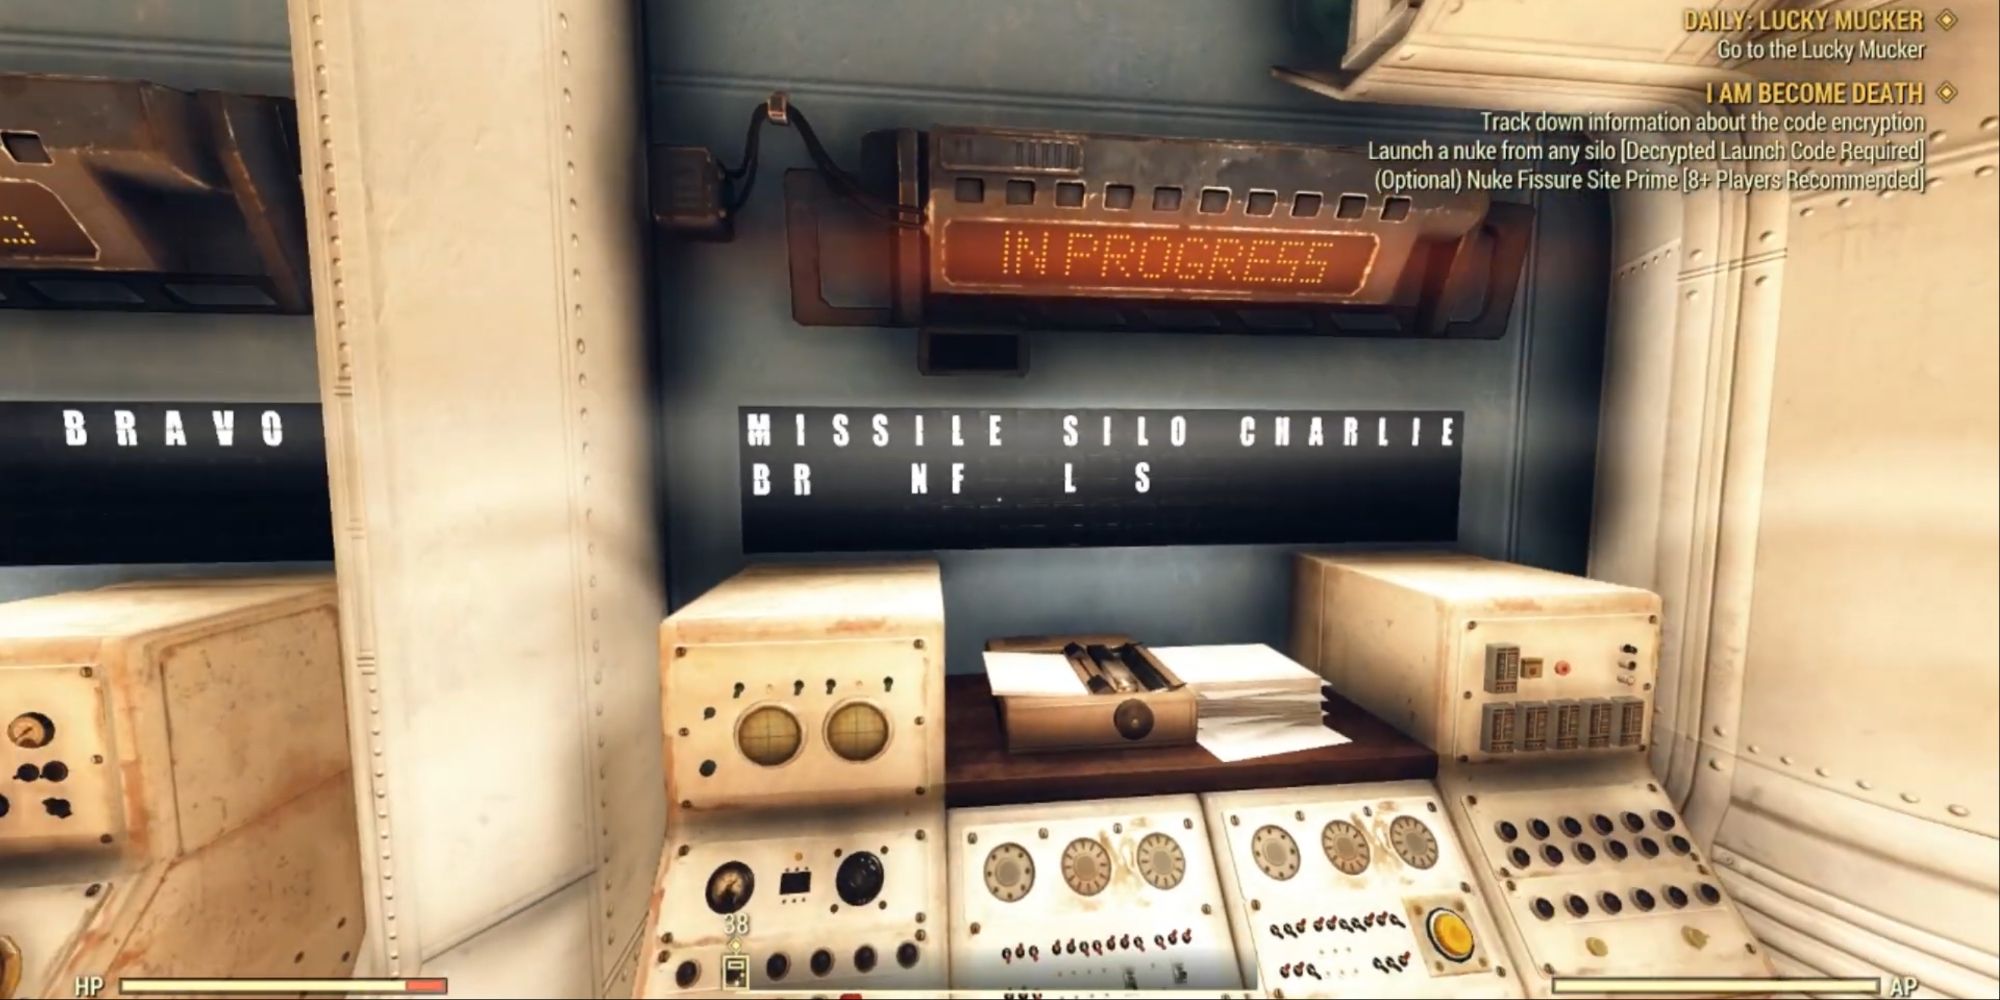 Fallout 76 - A missile silo control panel